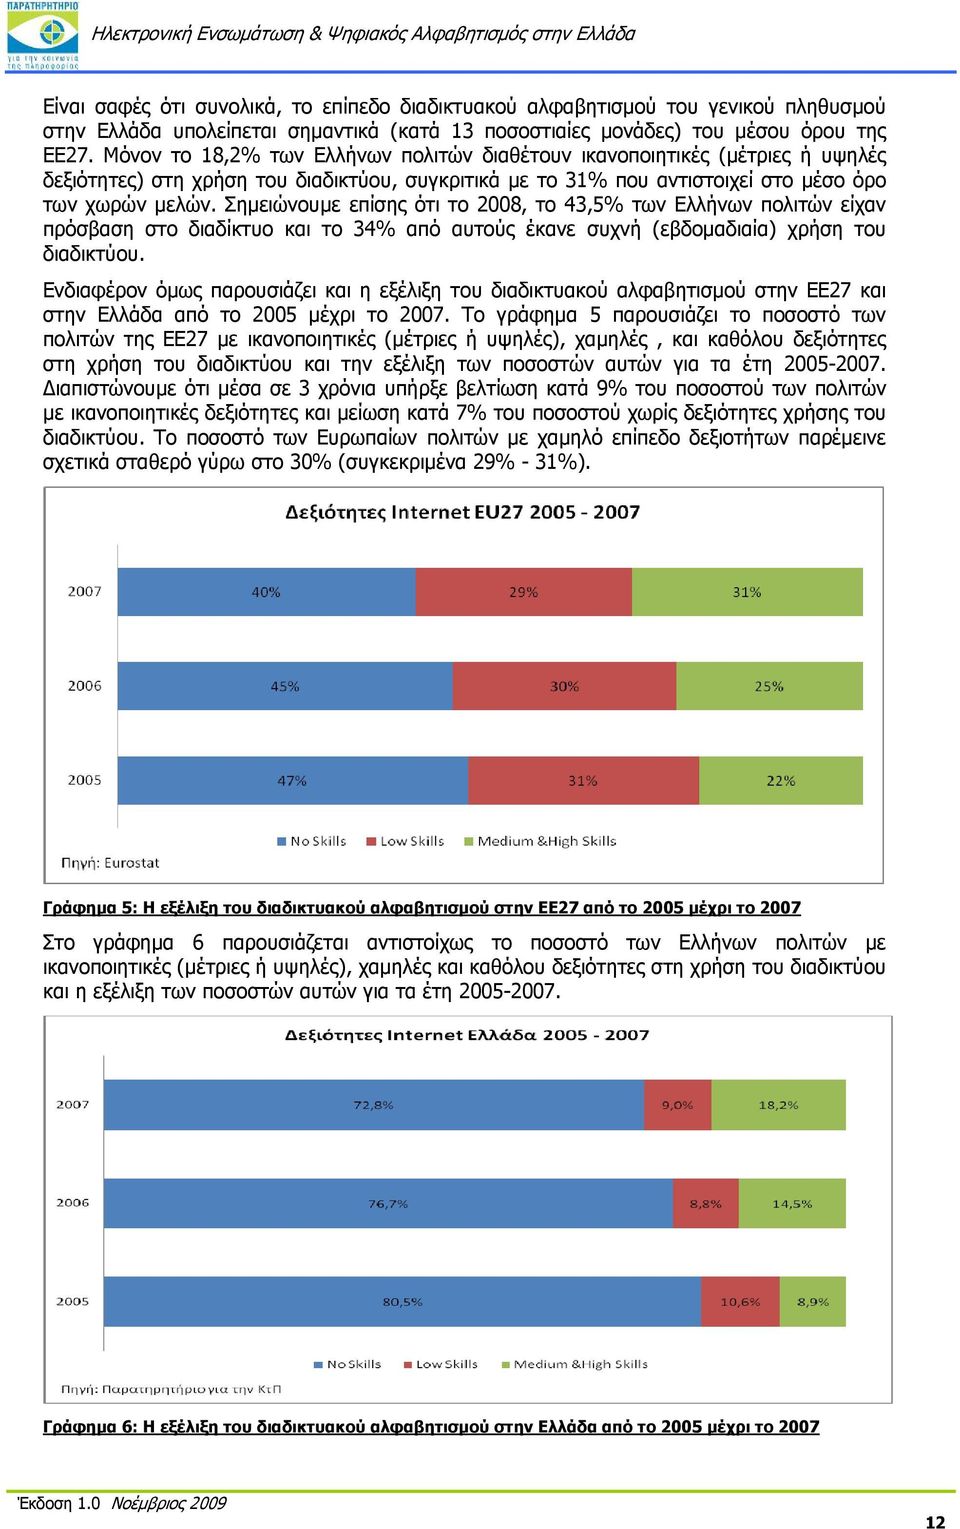 Σημειώνουμε επίσης ότι το 2008, το 43,5% των Ελλήνων πολιτών είχαν πρόσβαση στο διαδίκτυο και το 34% από αυτούς έκανε συχνή (εβδομαδιαία) χρήση του διαδικτύου.